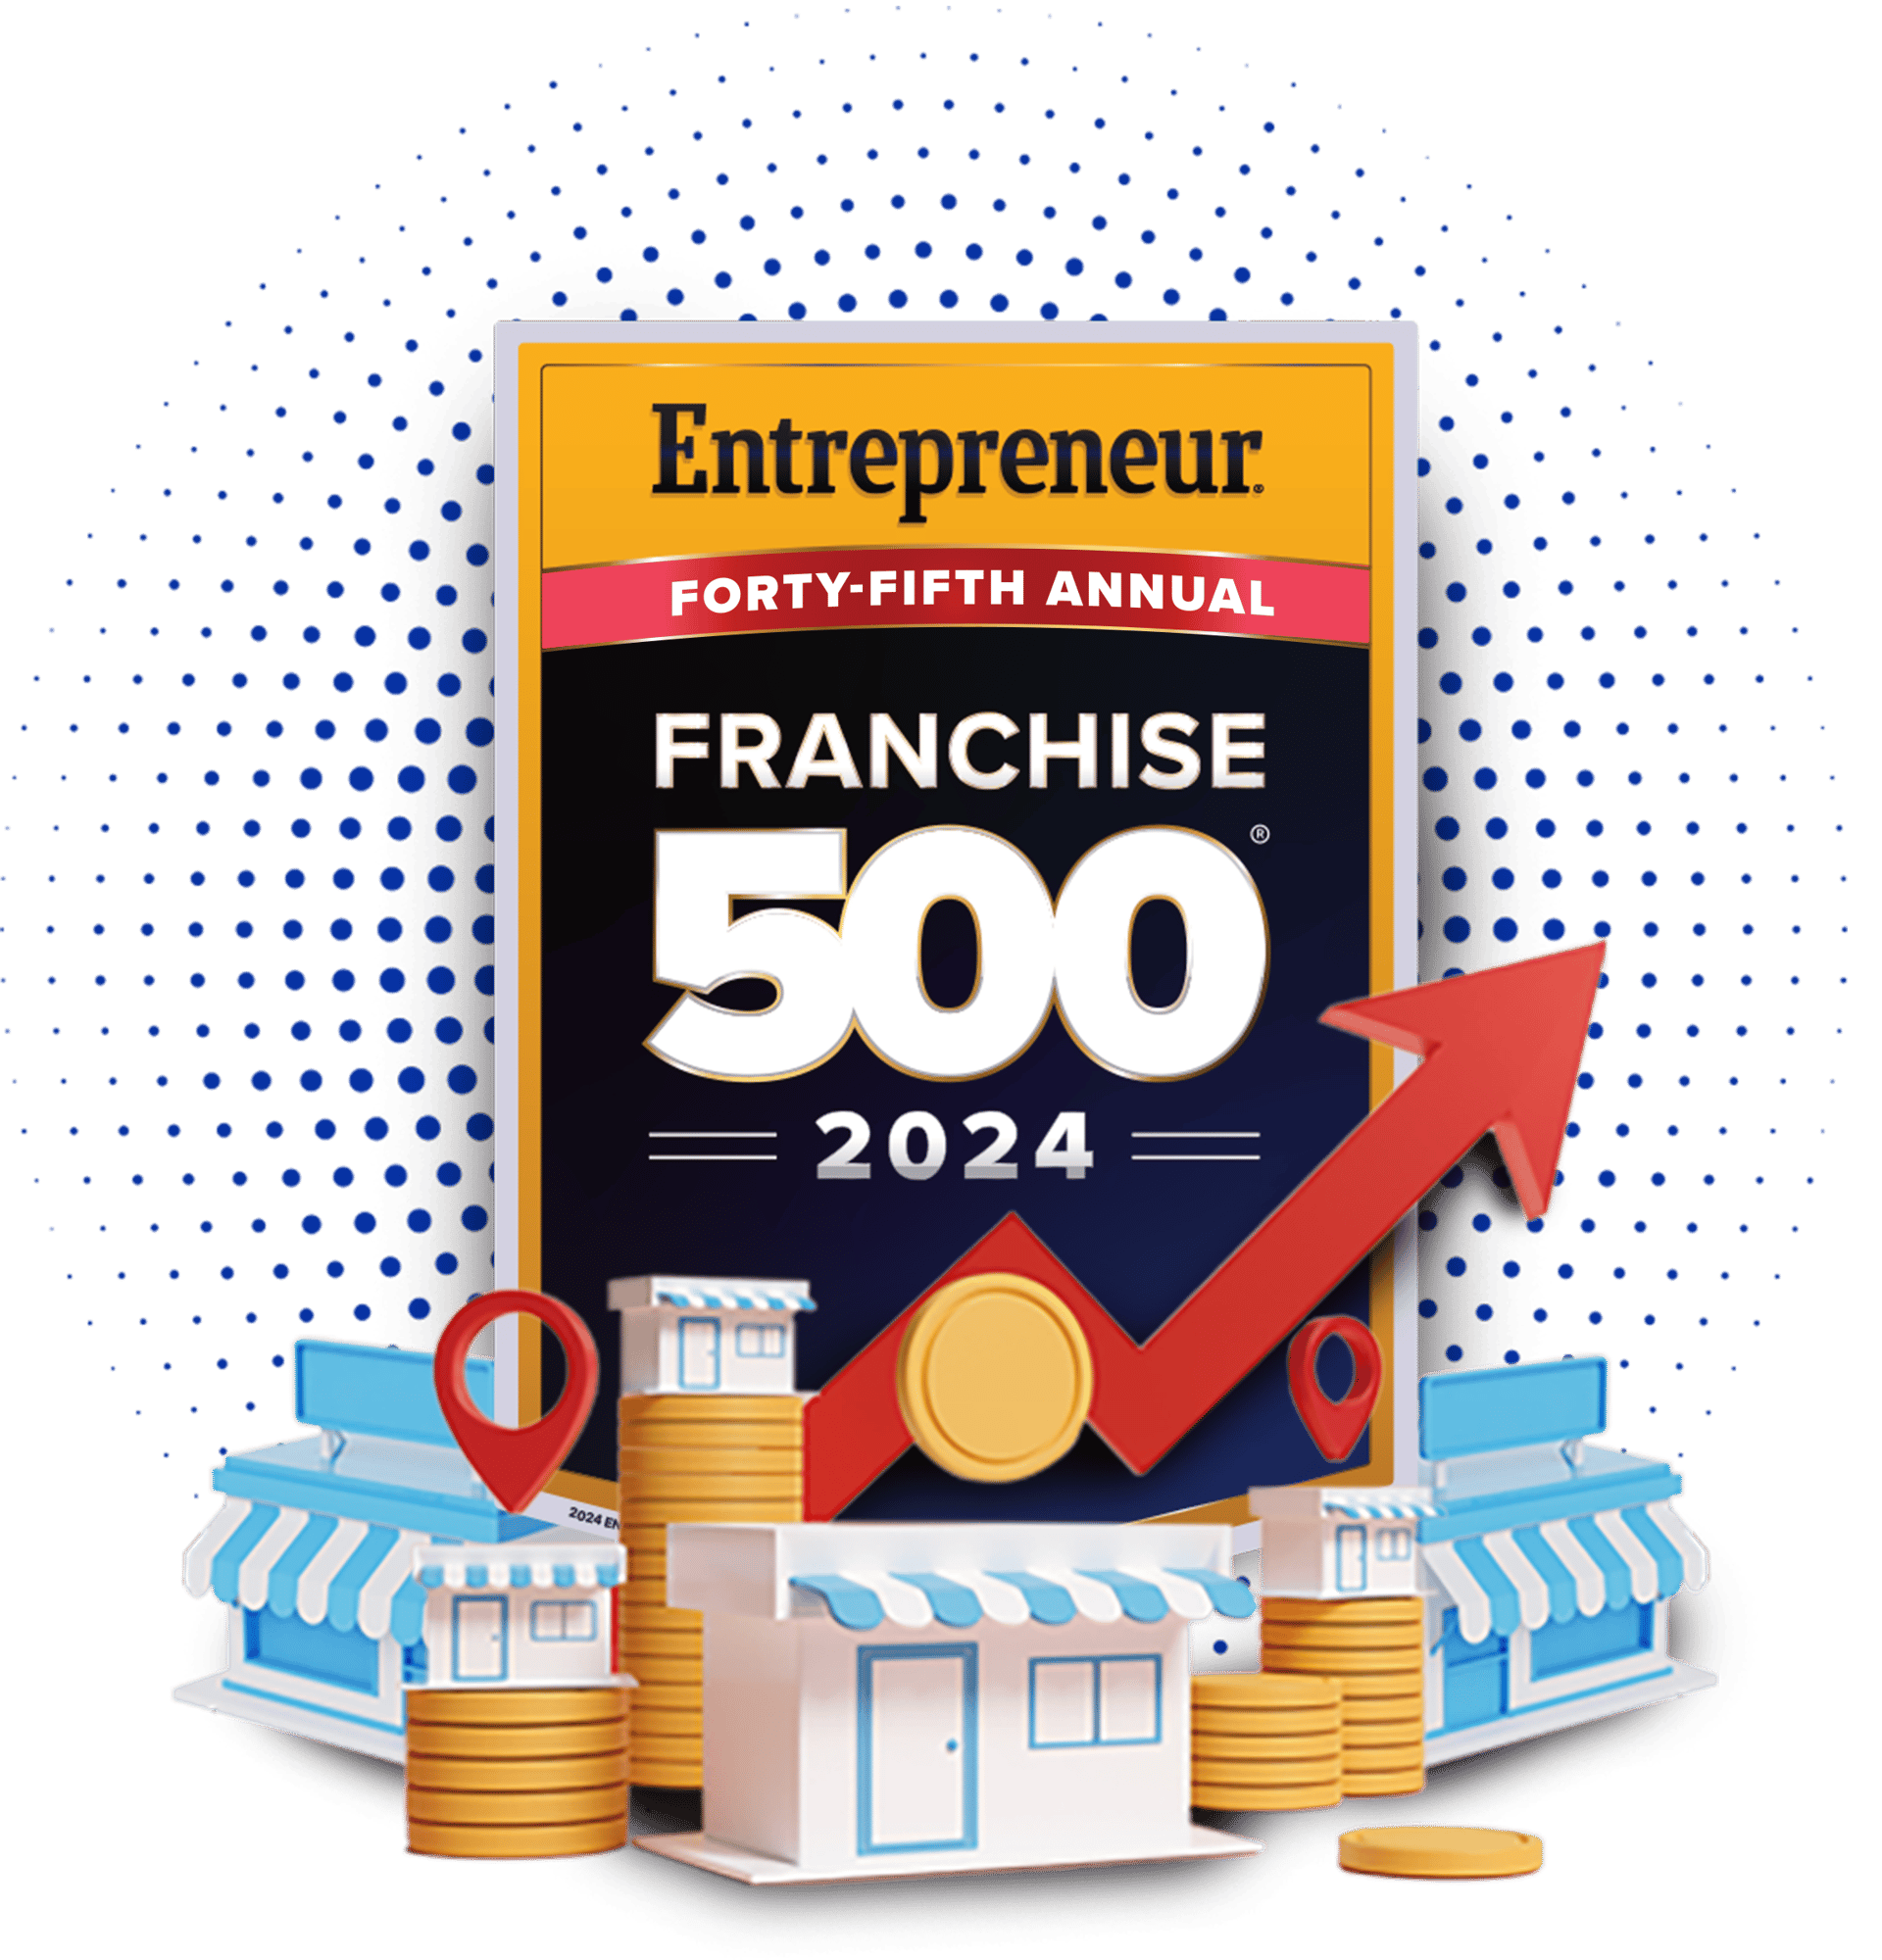 Entrepreneur Franchise 500 Apply Now